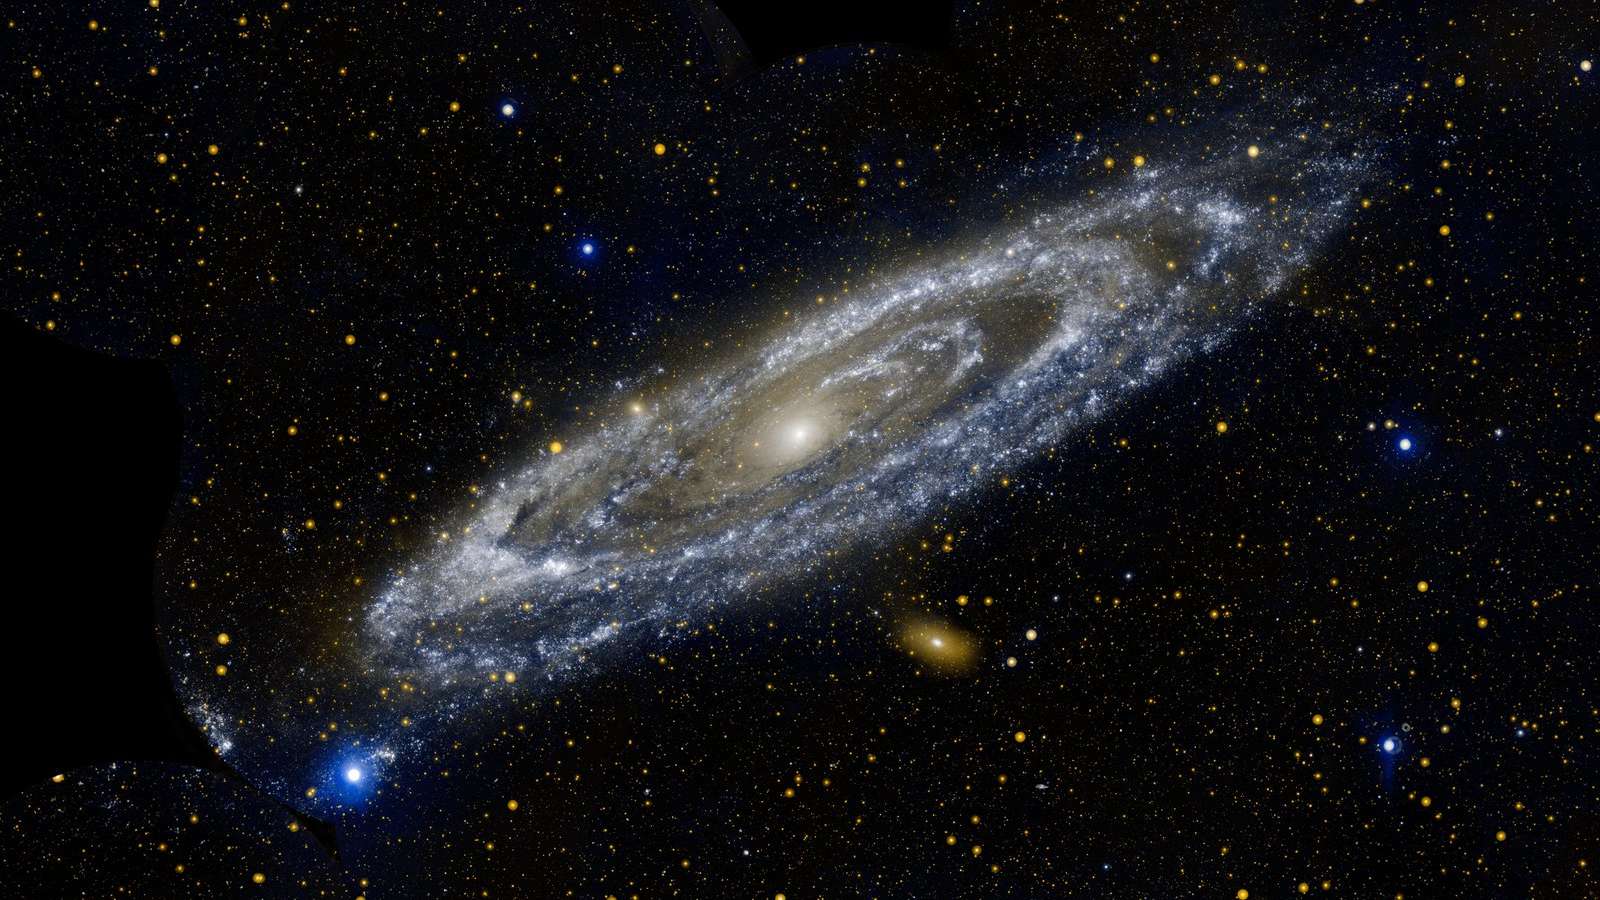 Estrelas quentes brilham intensamente nesta imagem, mostrando as emissões em ultravioleta de um objeto bem familiar. A aproximadamente 2,5 milhões de anos-luz de distância, a Galáxia de Andrômeda (M31) é a maior vizinha da nossa Via Láctea. Localizada na Constelação de Andrômeda, ela tem uma extensão de cerca de 260 mil anos-luz de diâmetro As faixas azul-esbranquiçadas da galáxia abrigam estrelas quentes, jovens e massivas. Faixas azul-acinzentadas traçam regiões onde a formação de estrelas está atualmente ocorrendo em densos casulos nublados. Já a bola central laranja-esbranquiçada revela uma congregação de estrelas antigas e mais frias, que se formaram há muito tempo